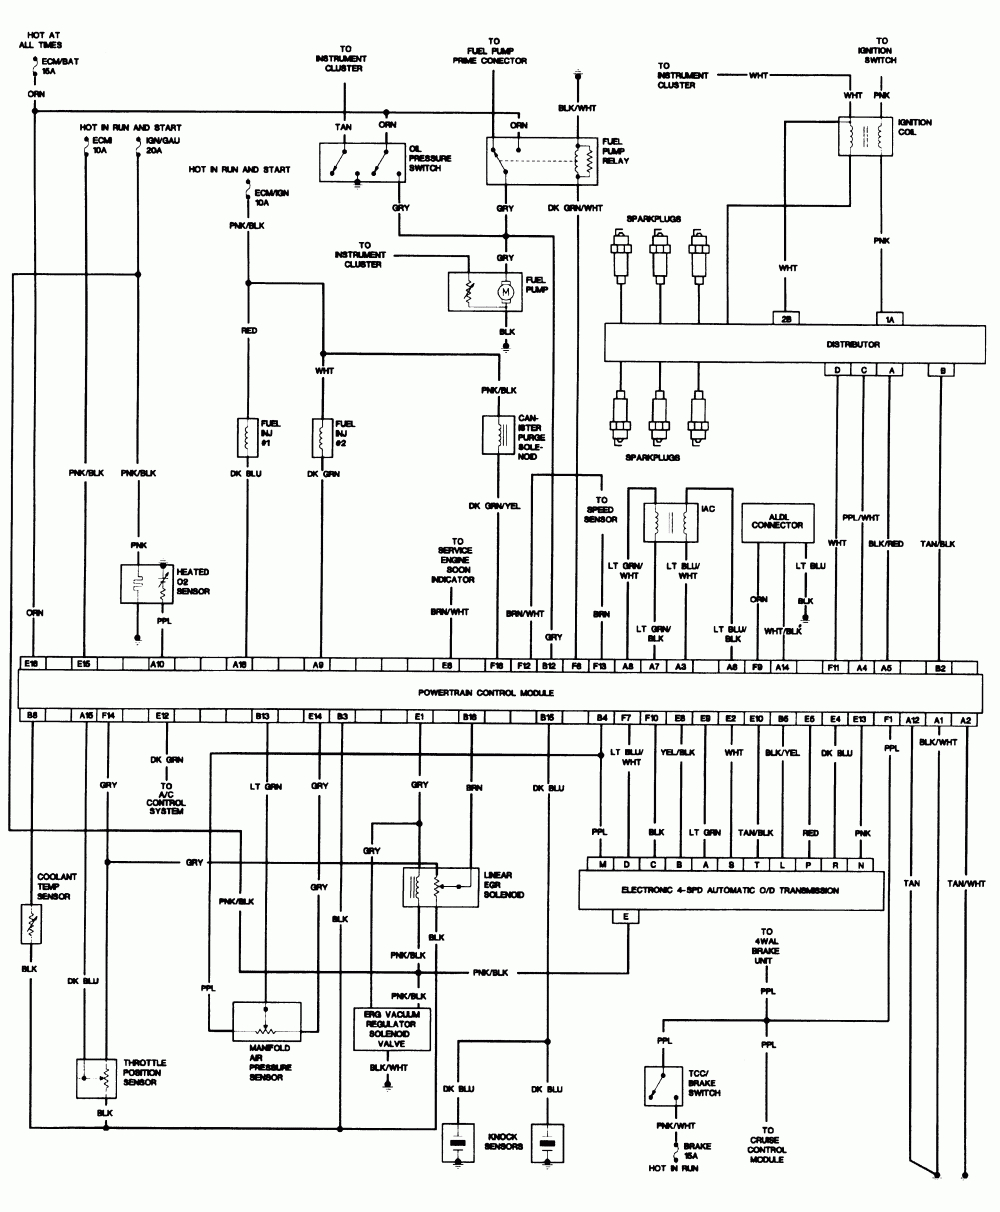 S10 Wiring Harness Diagram - Schema Wiring Diagram - S10 Wiring Harness Diagram